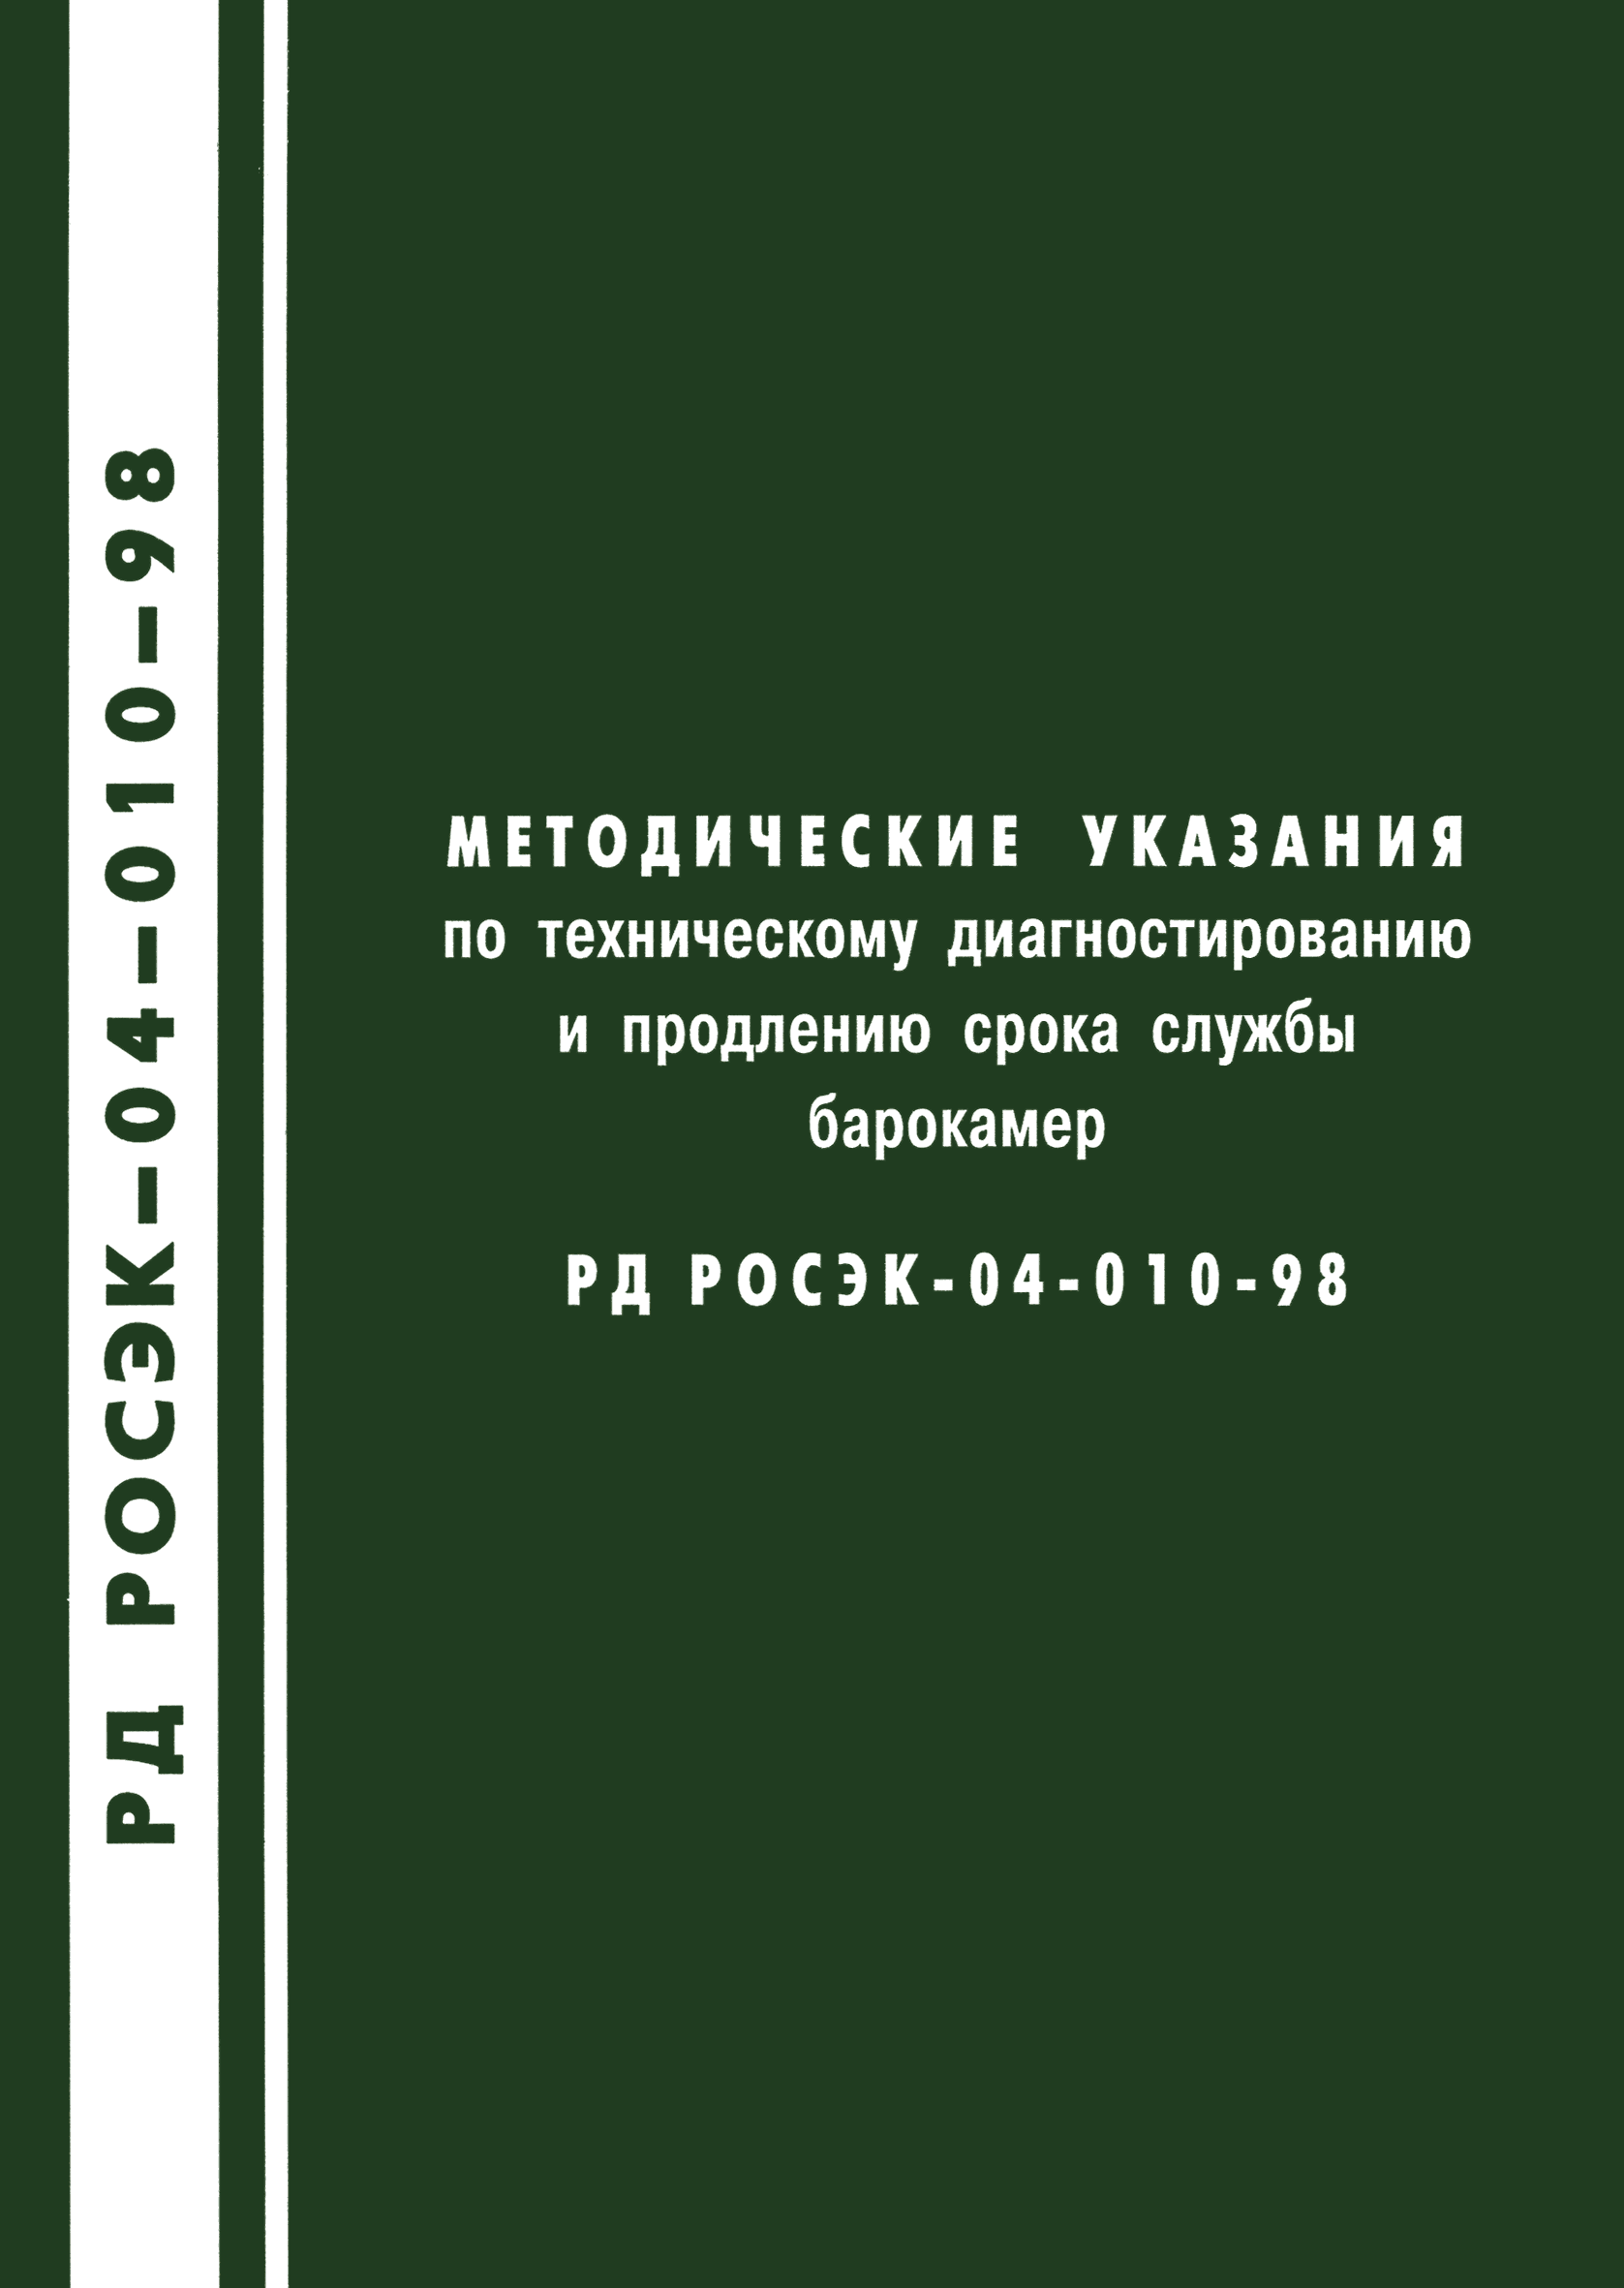 РД РосЭК 04-010-98